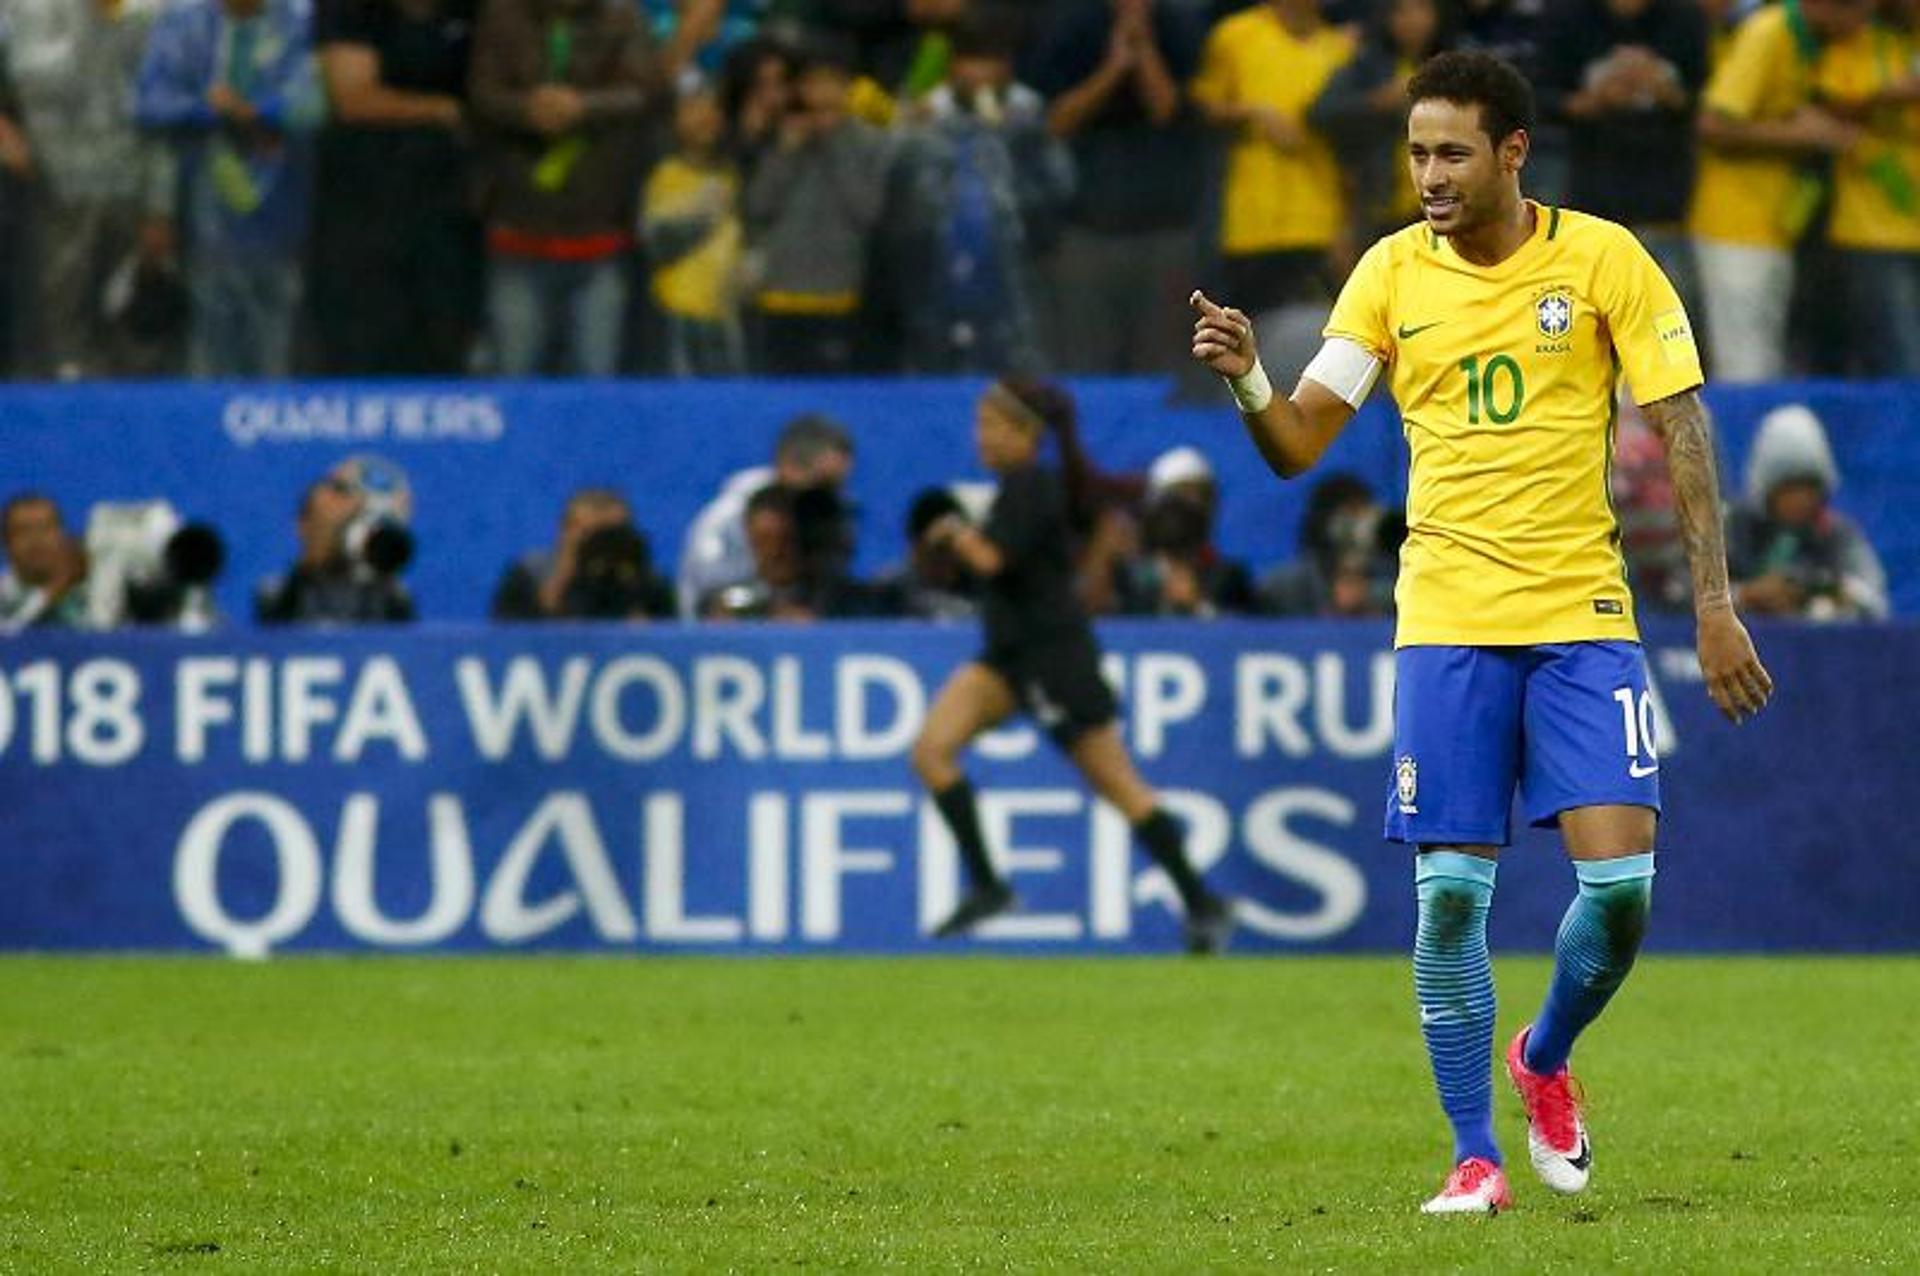 Sem muitas alterações no Ranking da Fifa, a Seleção Brasileira segue na liderança